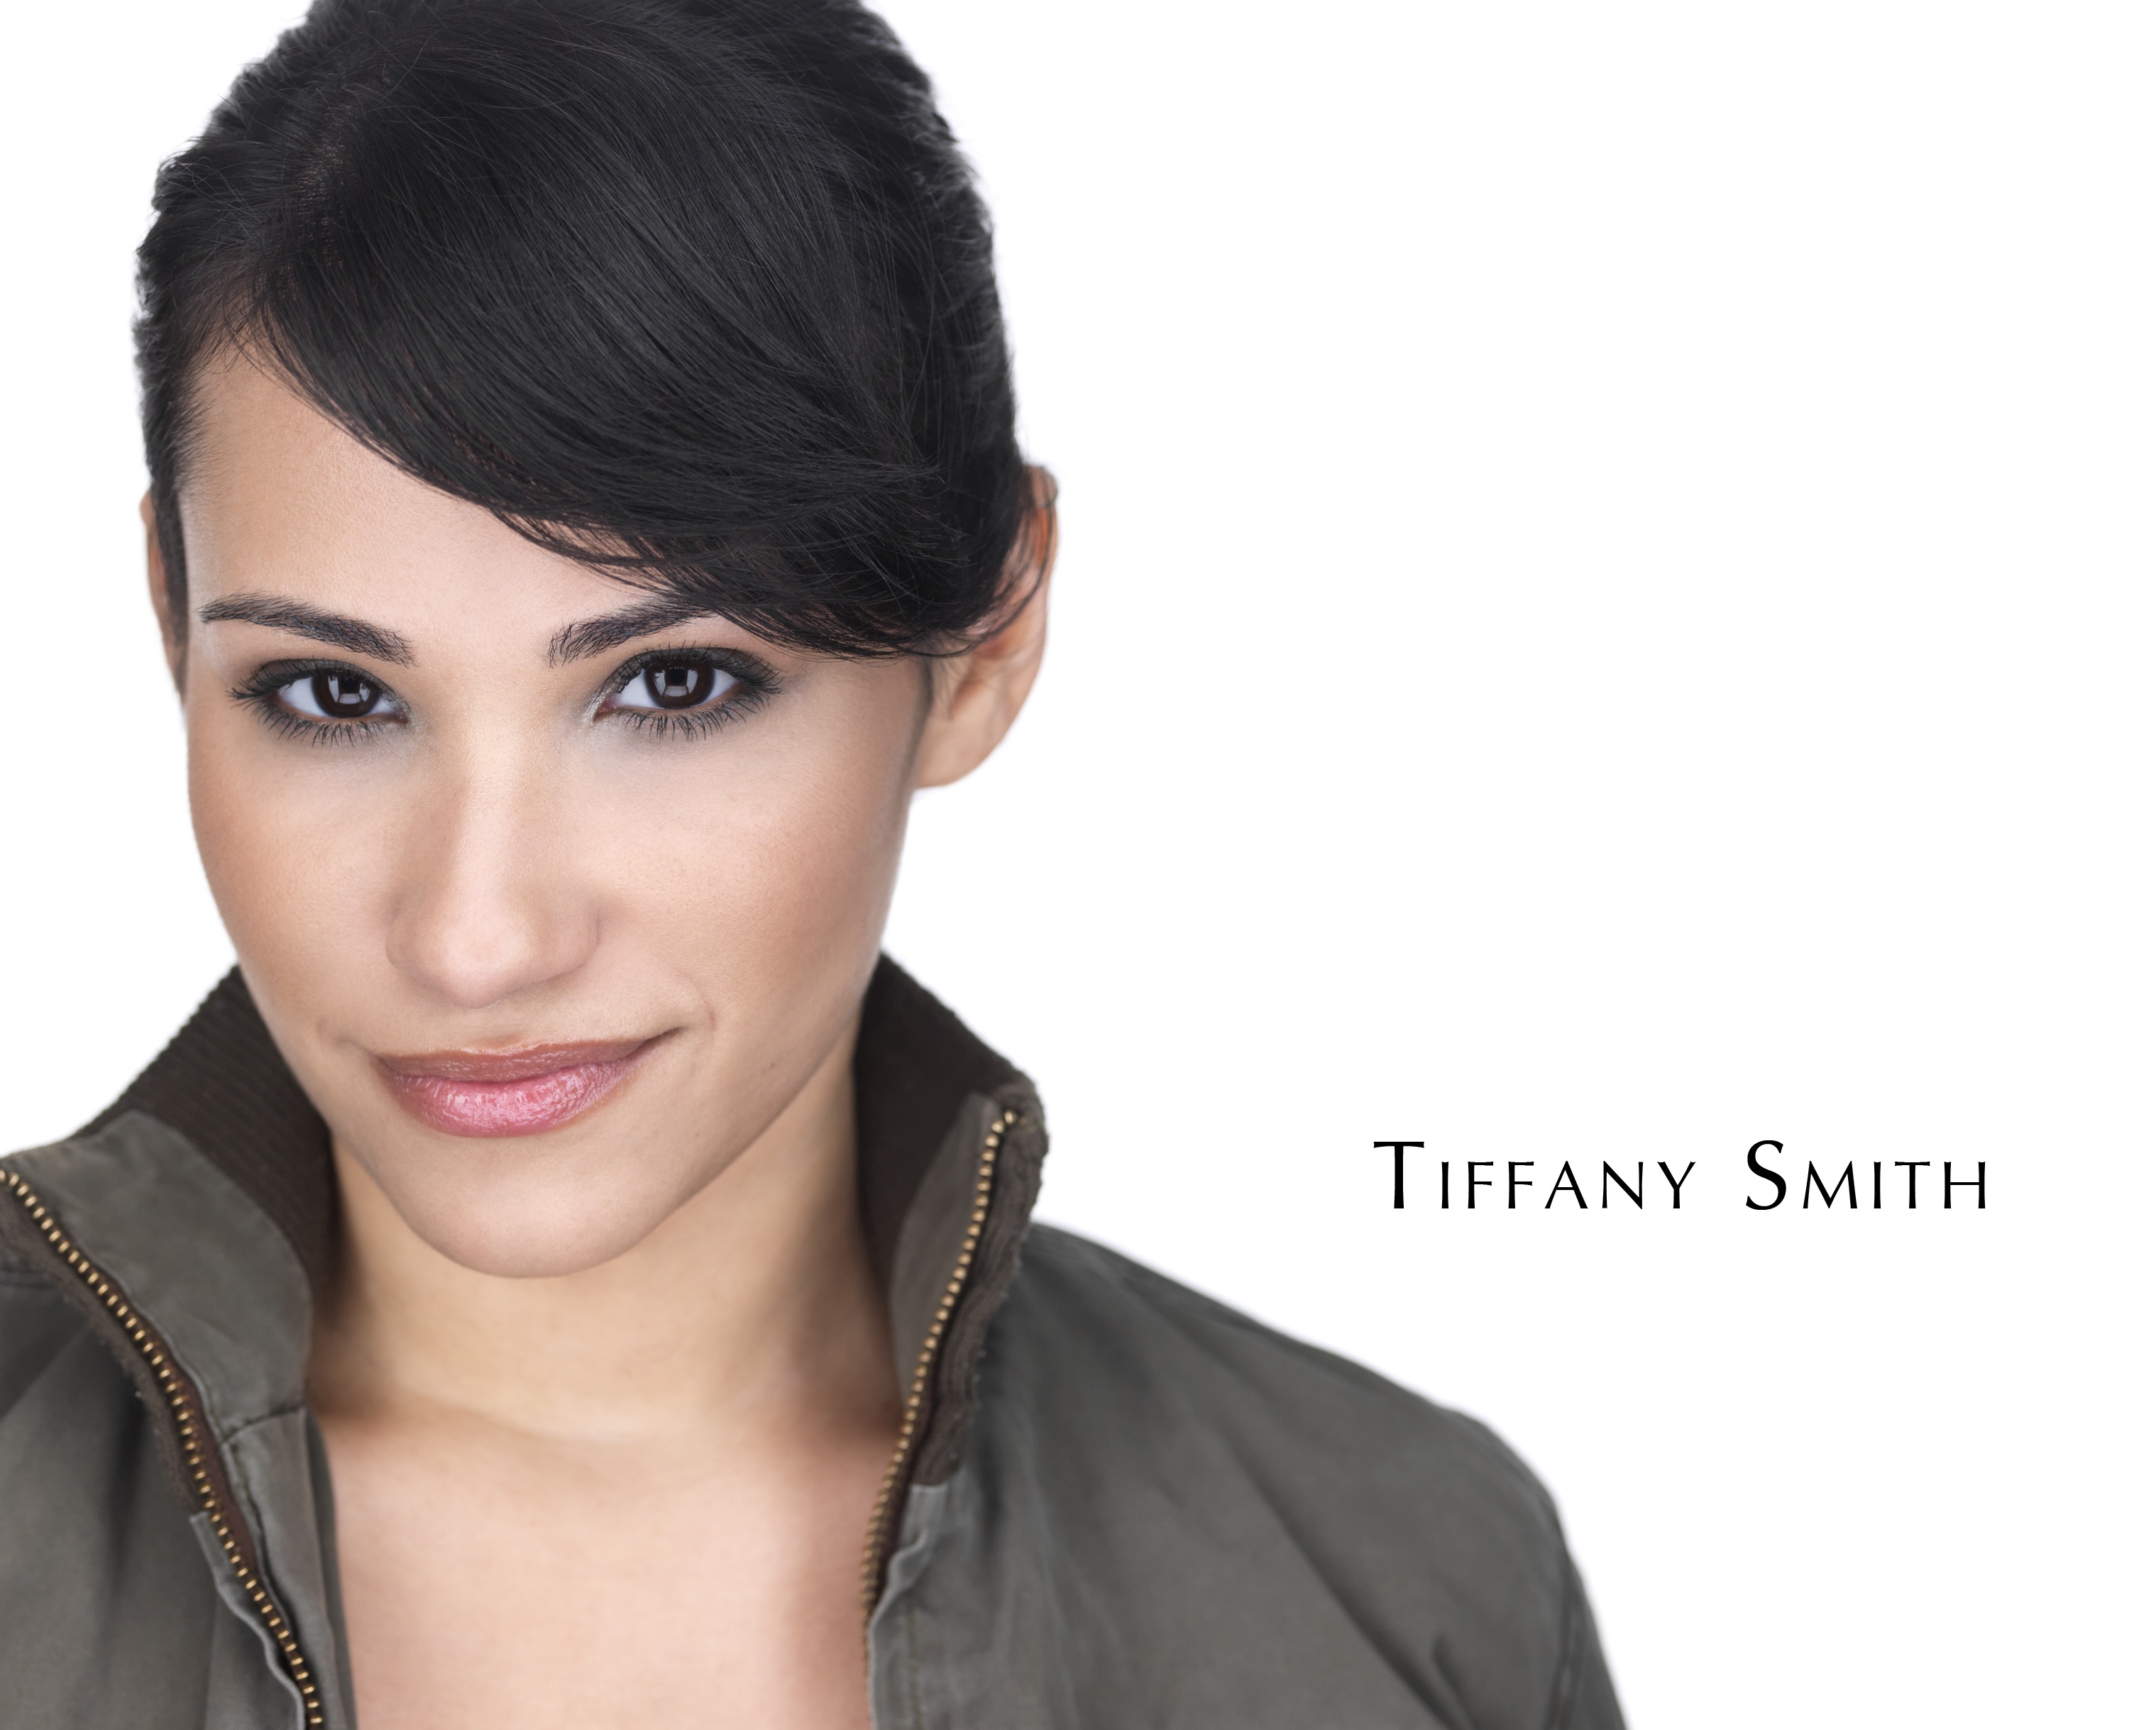 Tiffany smith sexy